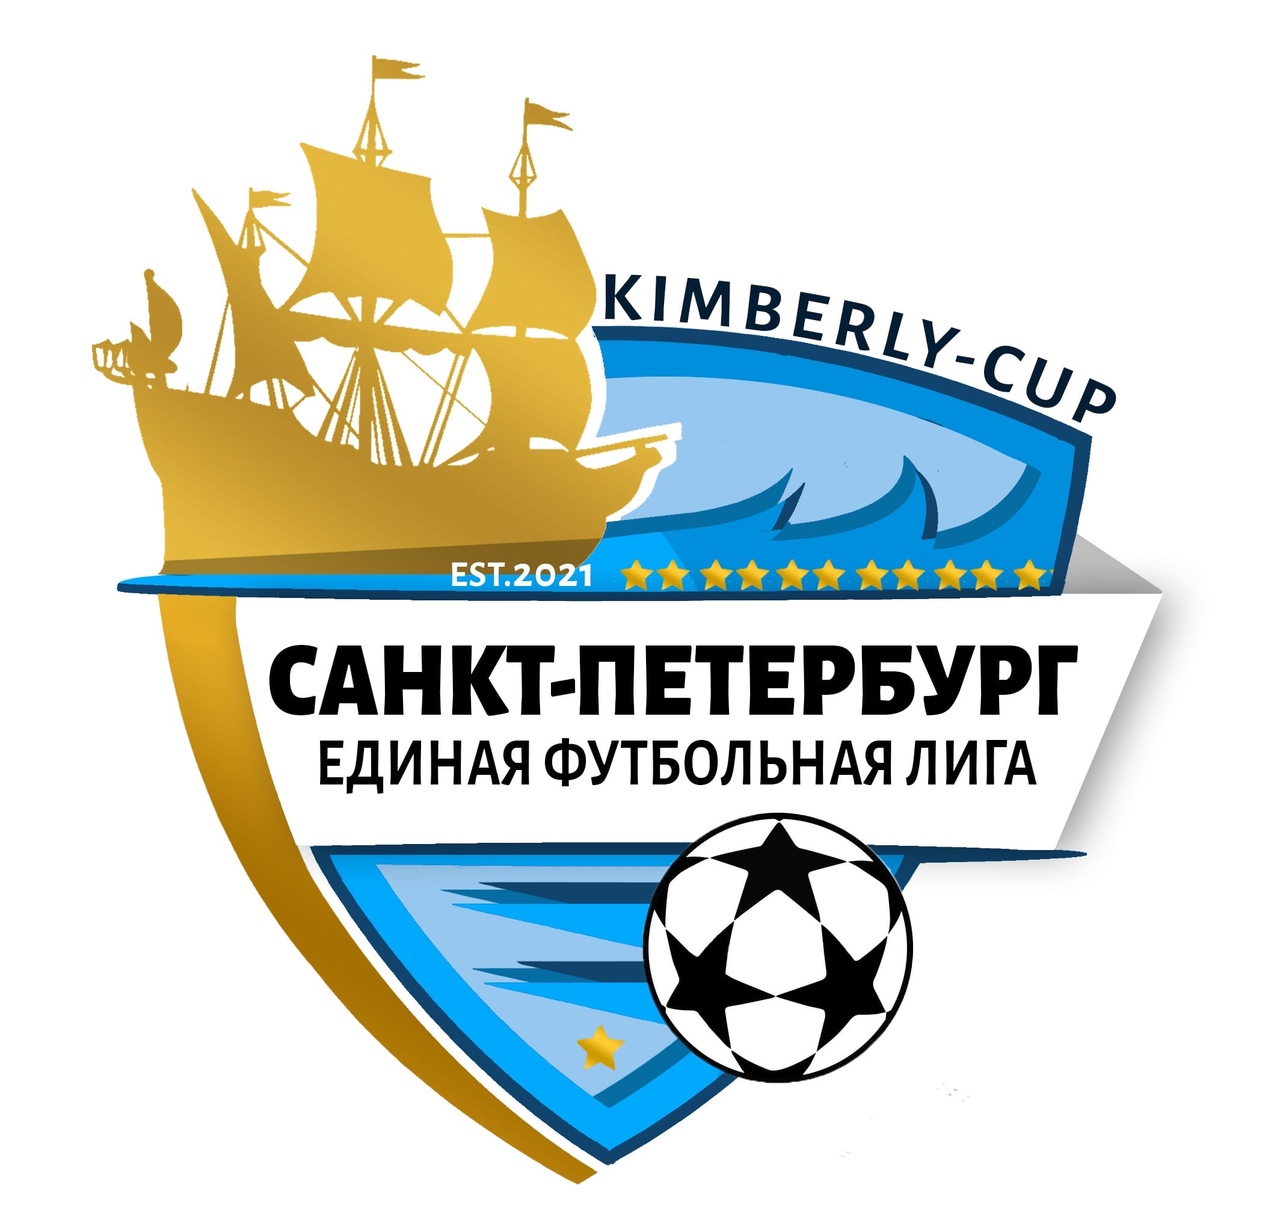 ЕФЛ Kimberly-Cup Санкт-Петербург